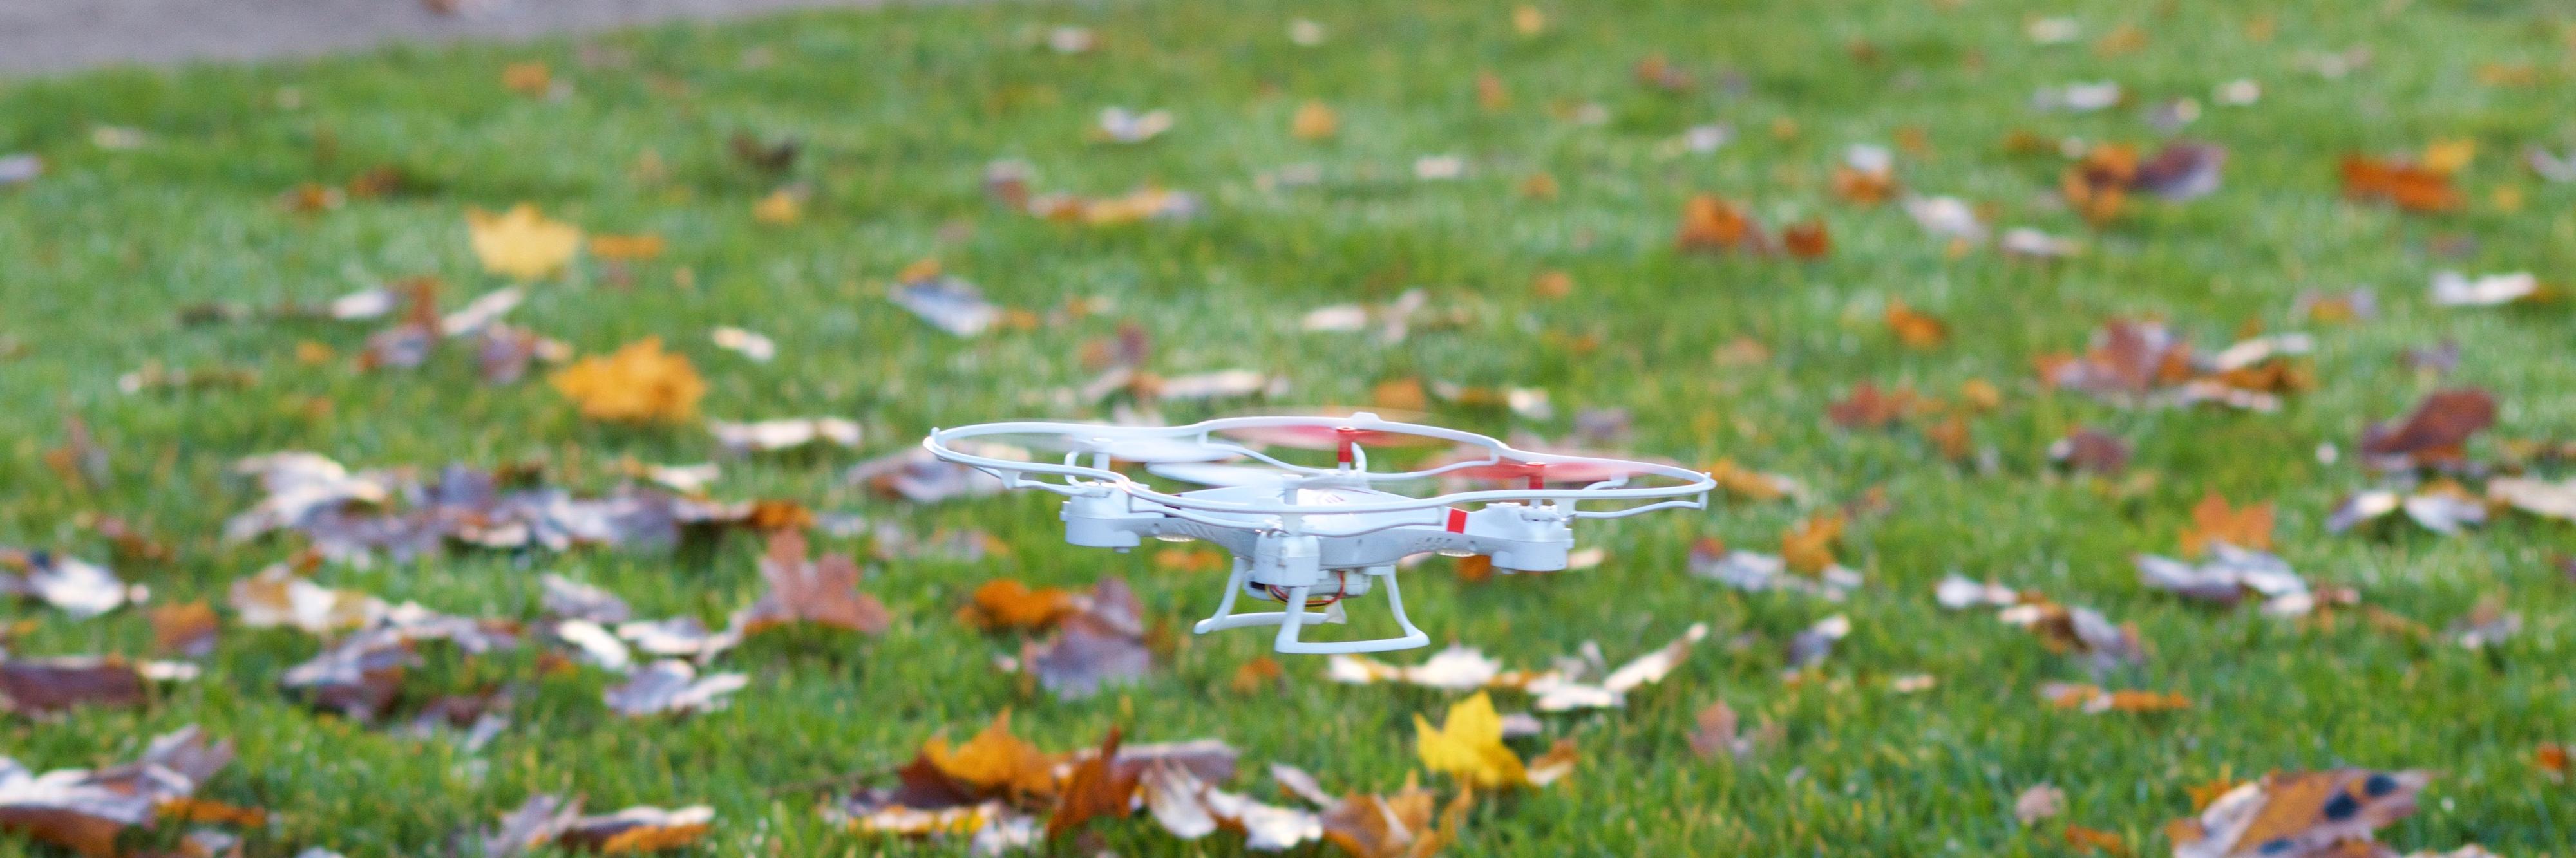 Focus Drone er ikke så vanskelig å kontrollere, men den blir veldig lett tatt av vinden på grunn av den relativt lave vekten. Foto: Erik Røseid, Tek.no